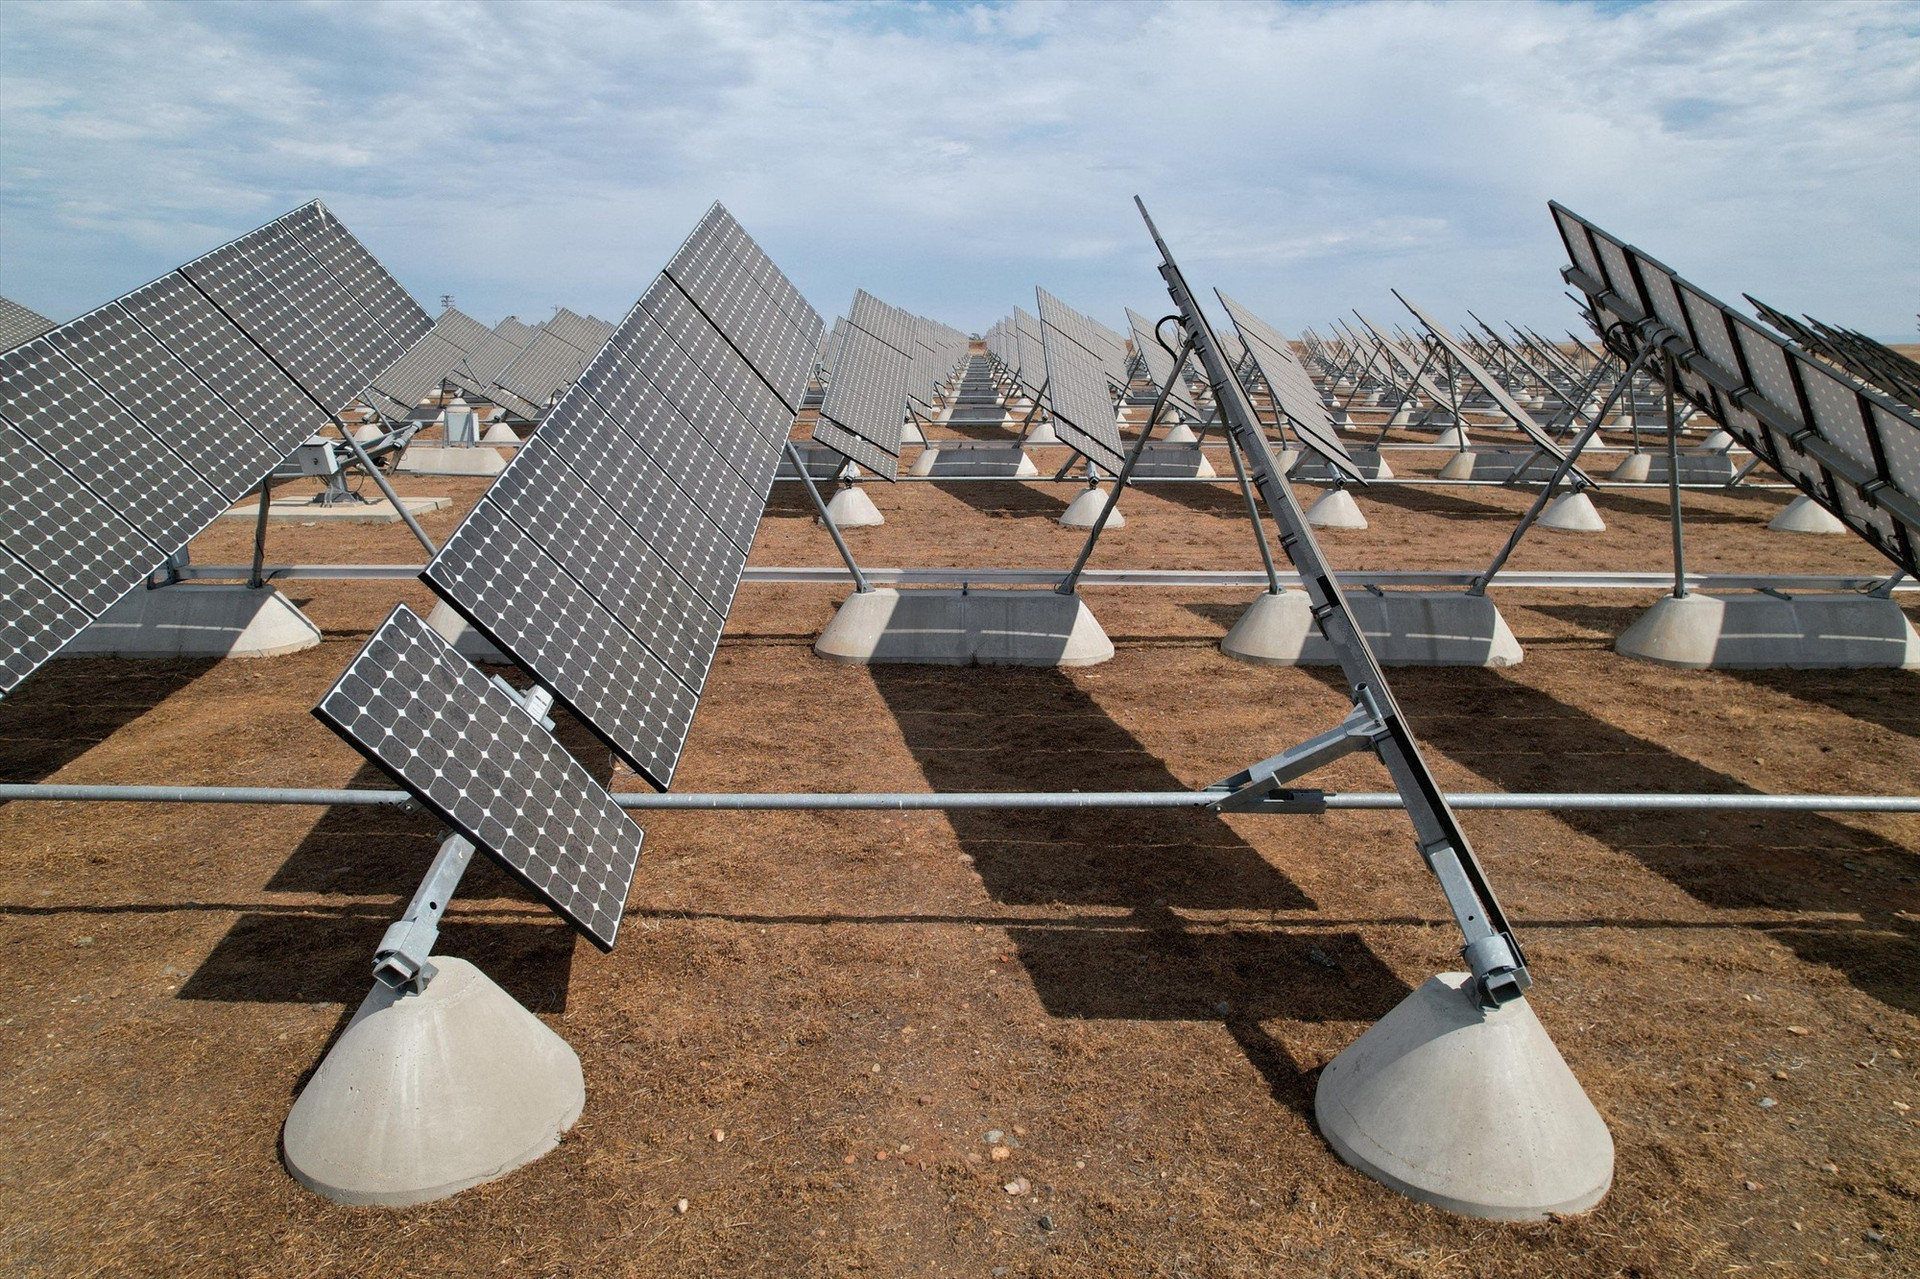 Tấm pin năng lượng mặt trời được lắp đặt tại trang trại năng lượng mặt trời tại Đại học California, Merced, ở Merced, California, Hoa Kỳ. Ảnh: Reuters